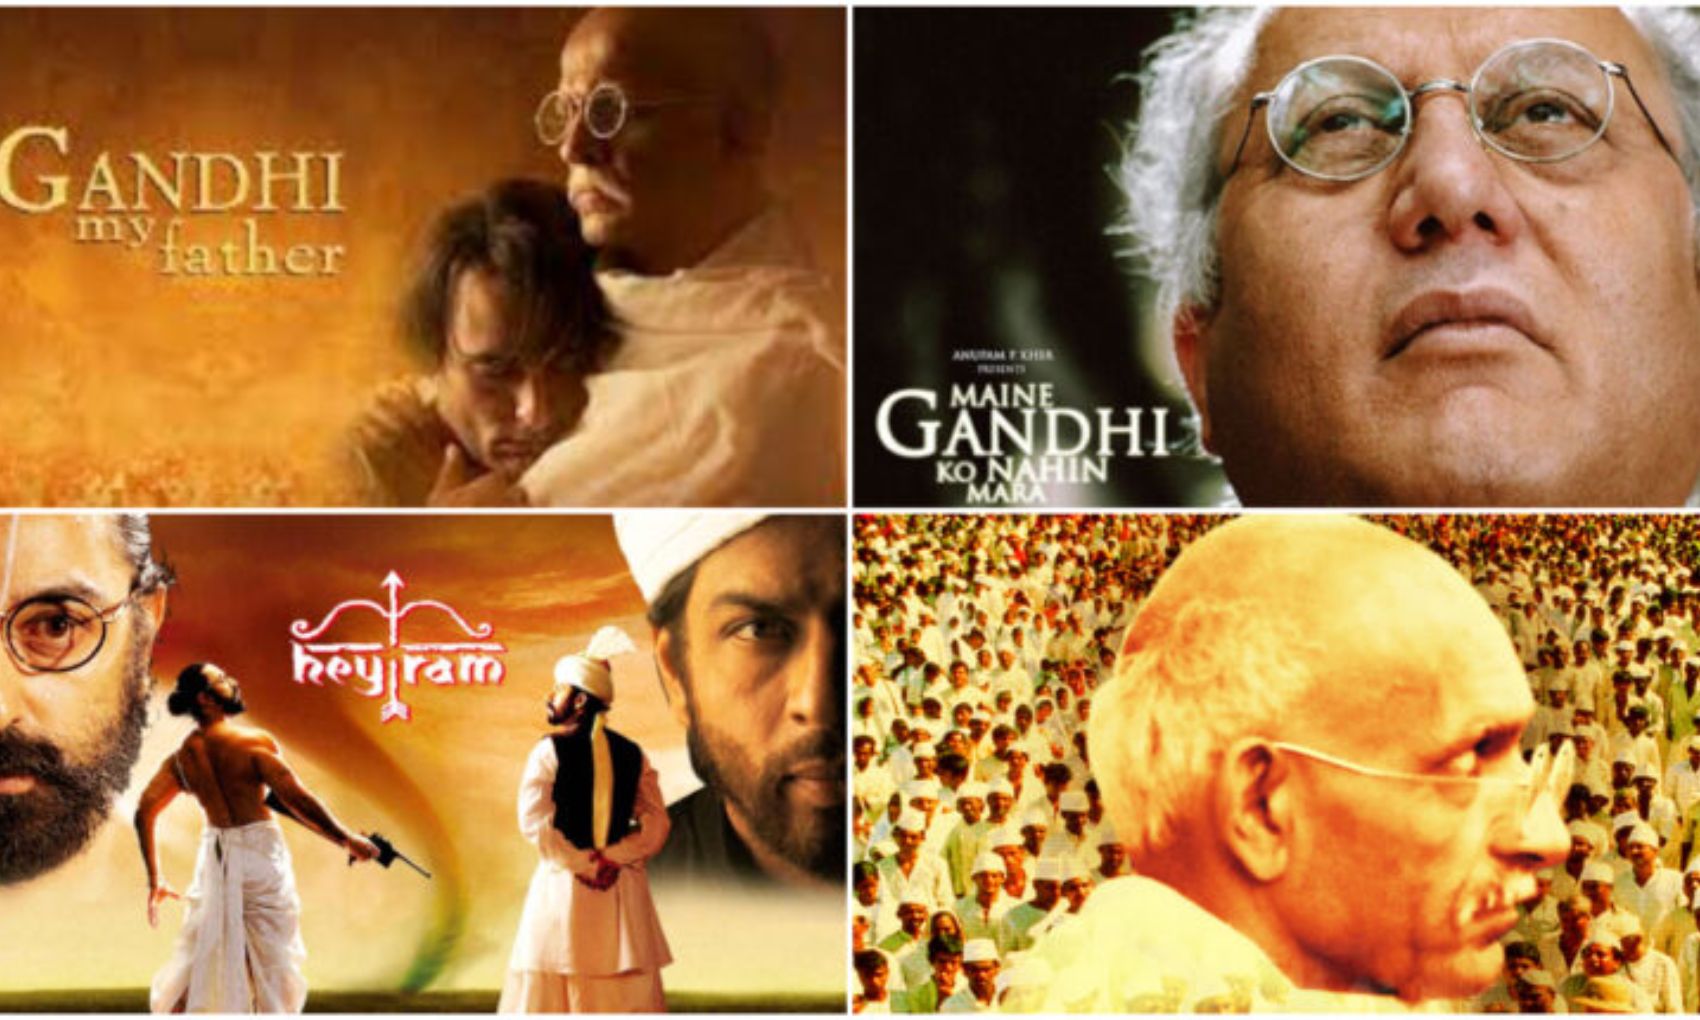 Gandhi Jayanti 2022: गांधी जी के जीवन पर बनी ये फिल्में आपको जरूर देखनी चाहिए, देखें लिस्ट